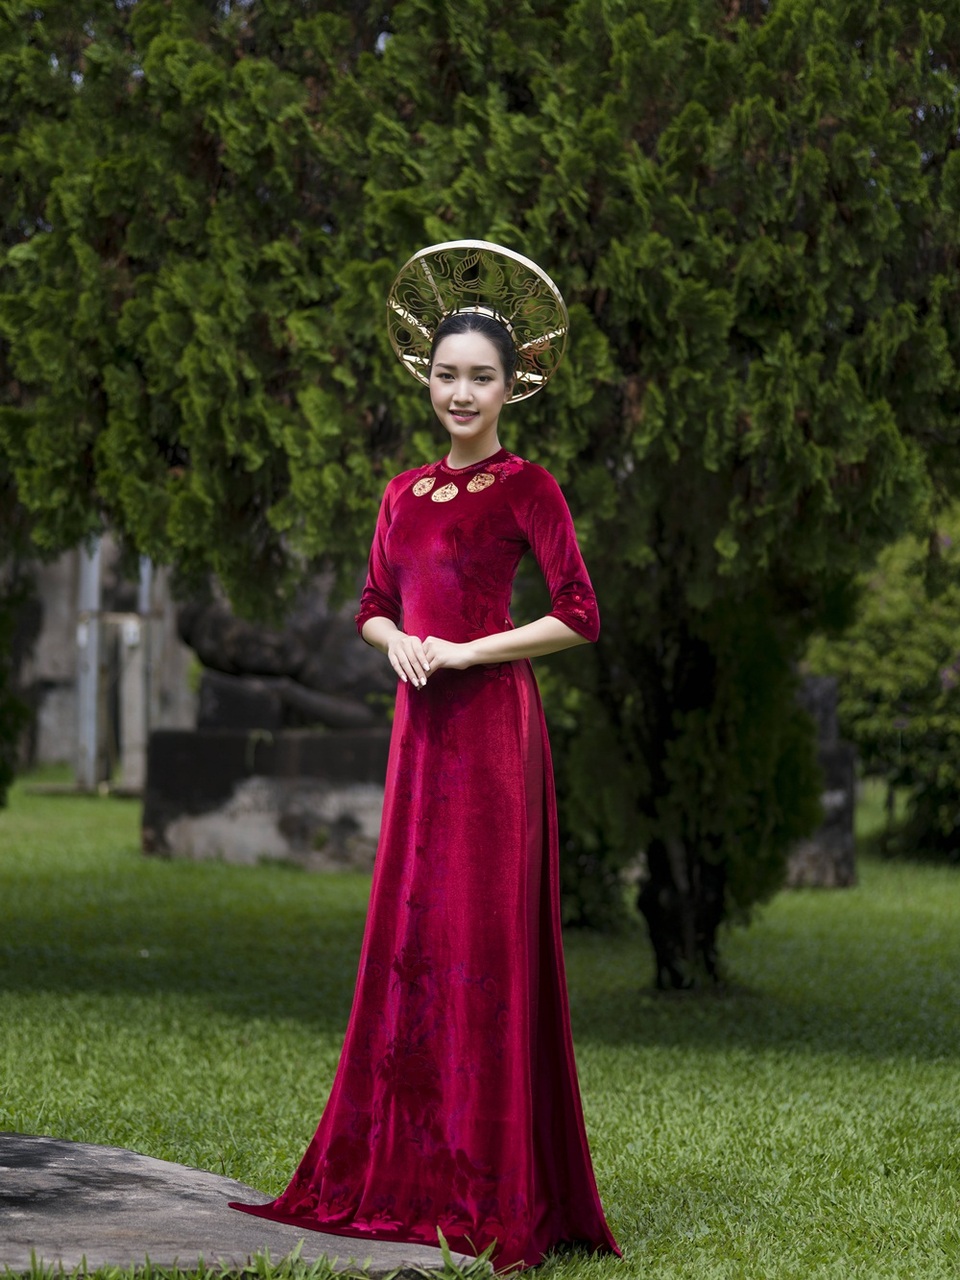 Áo dài là của người Việt Nam, một sự đẹp đẽ đầy chất dân tộc